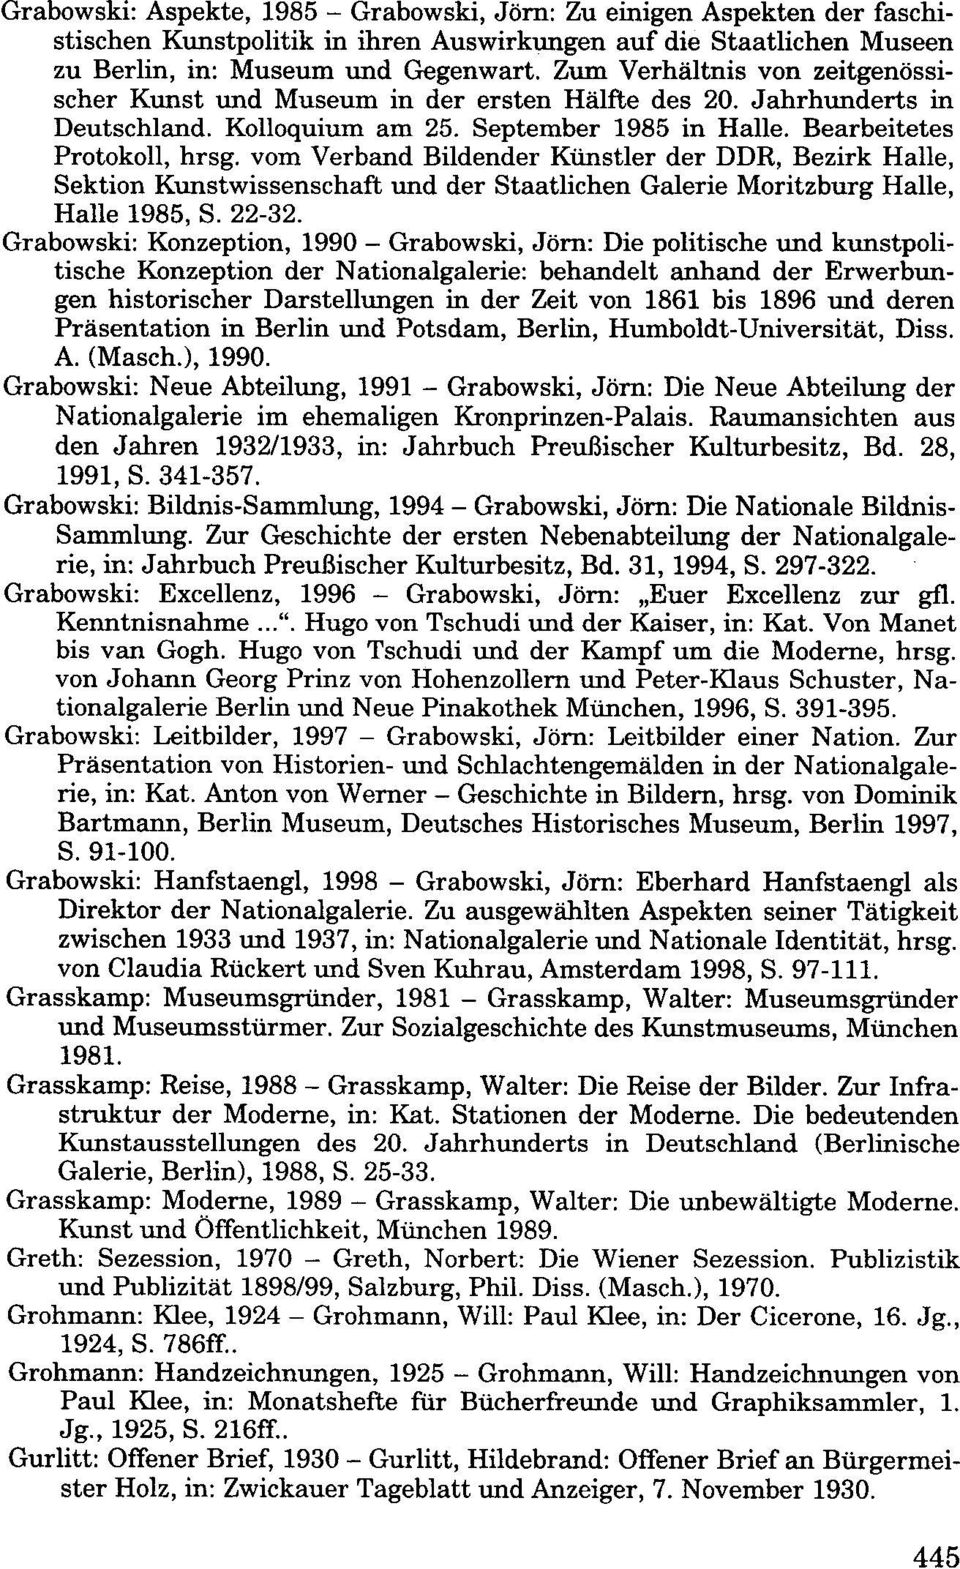 vom Verband Bildender Künstler der DDR, Bezirk Halle, Sektion Kunstwissenschaft und der Staatlichen Galerie Moritzburg Halle, Halle 1985, S. 22-32.